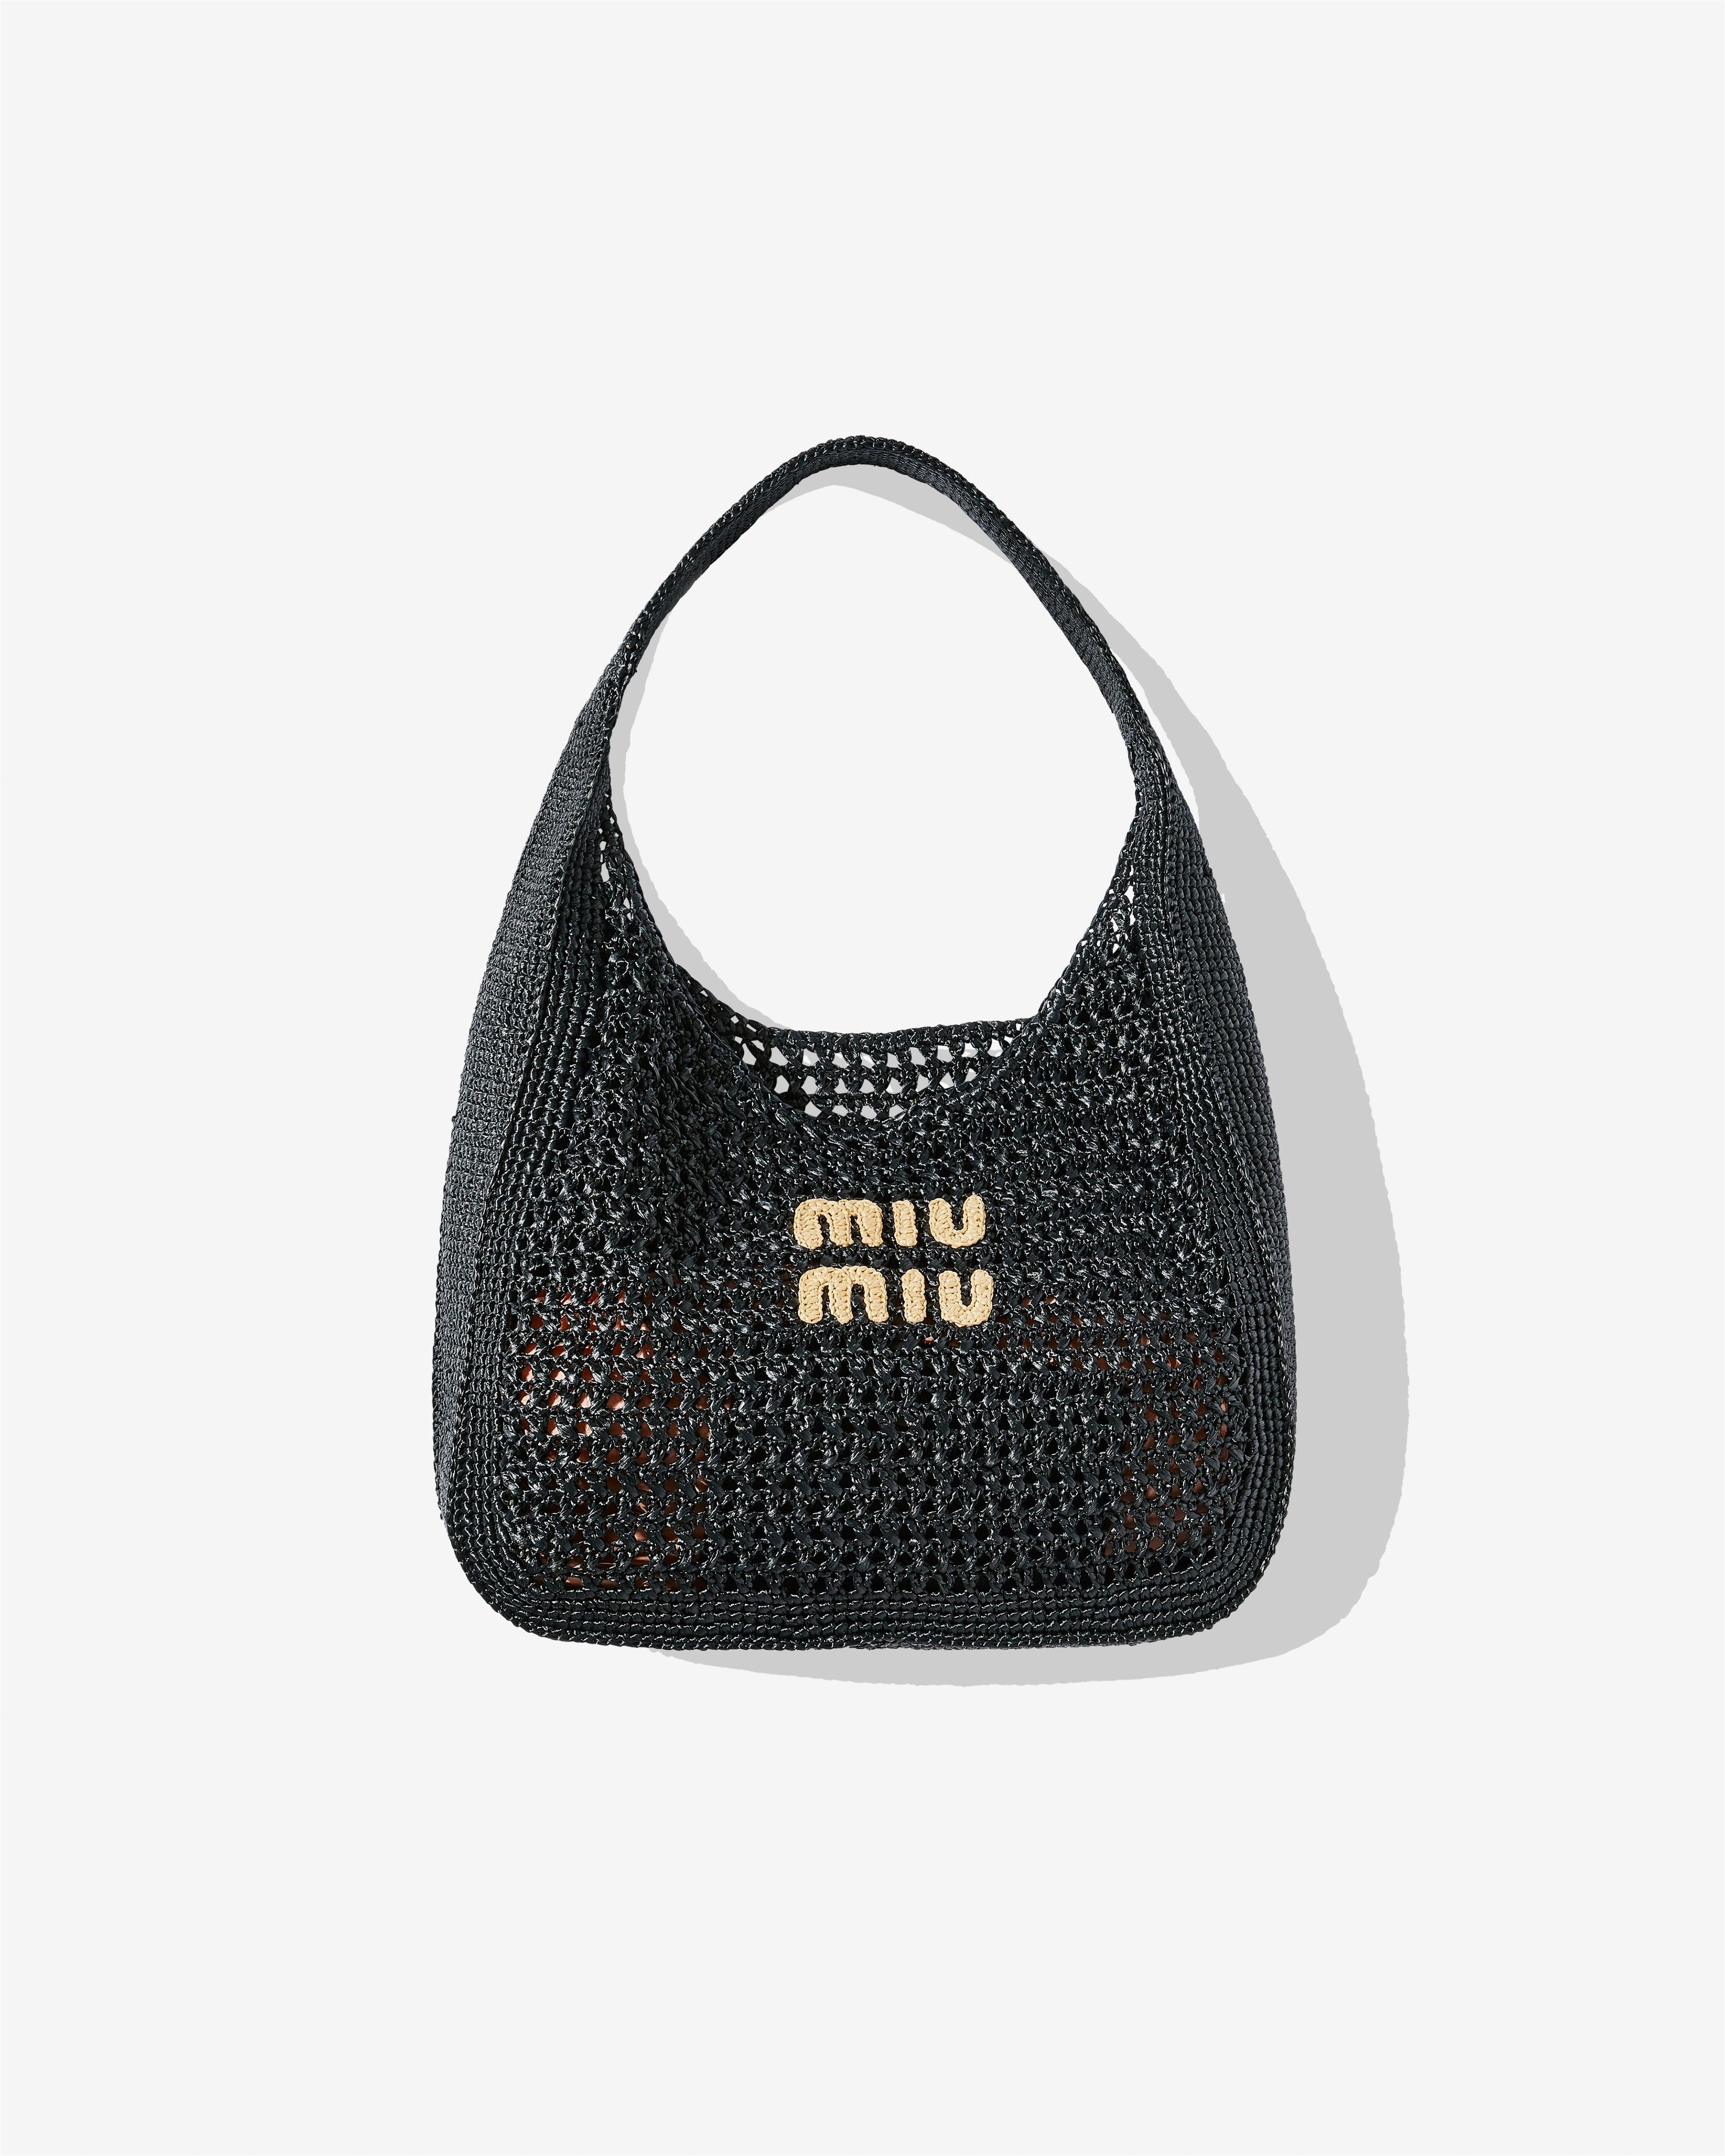 Miu Miu - Women's Woven Fabric Hobo Bag - (Black/Tan) by MIU MIU